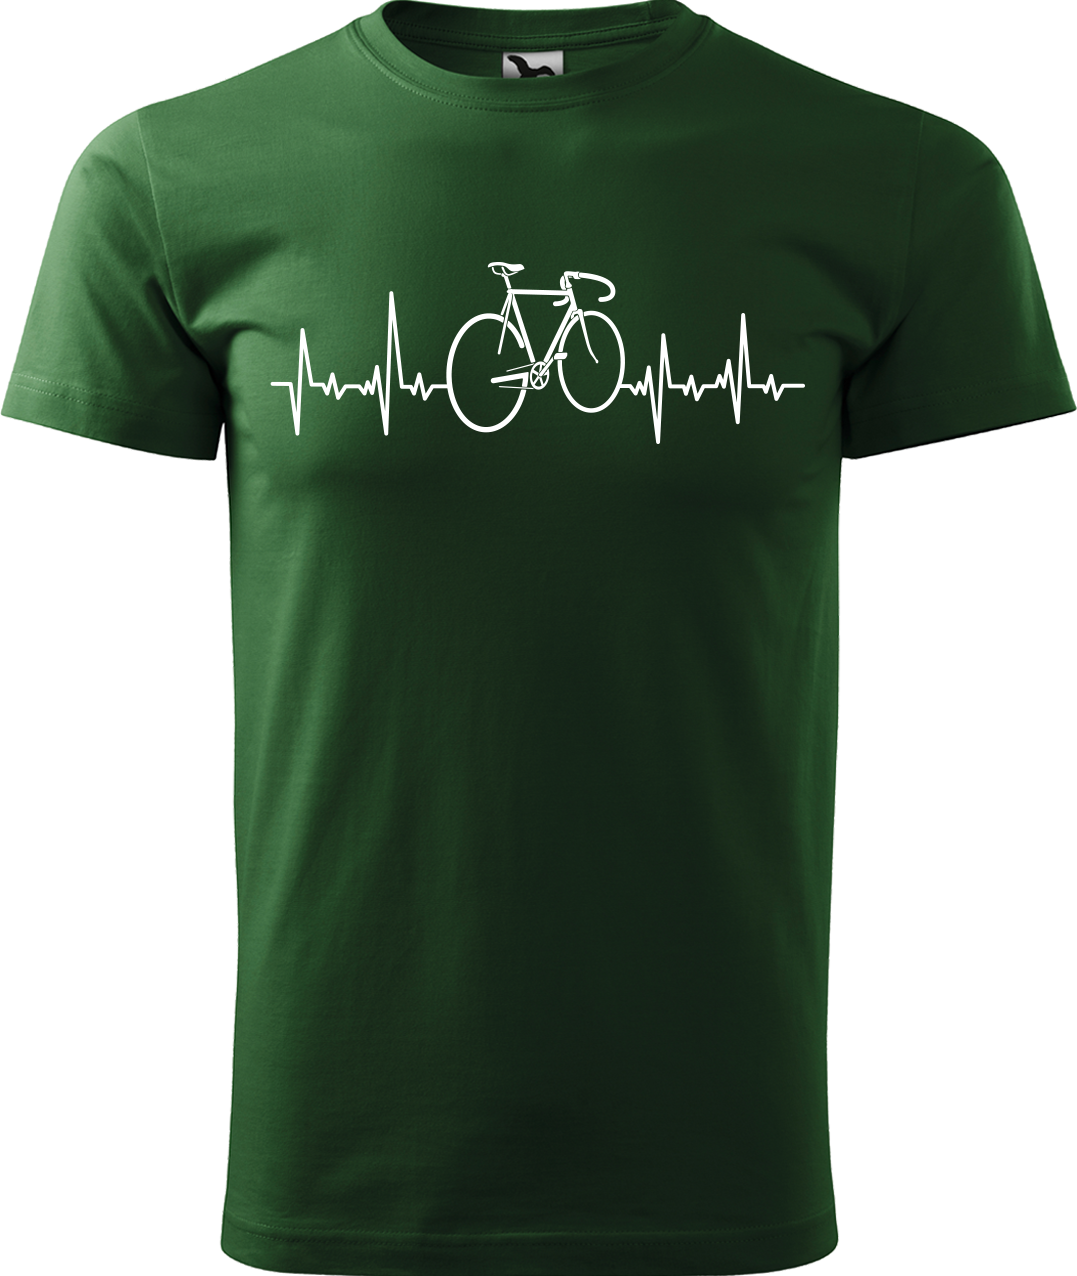 Pánské tričko s kolem - Cyklistův kardiogram Velikost: M, Barva: Lahvově zelená (06)